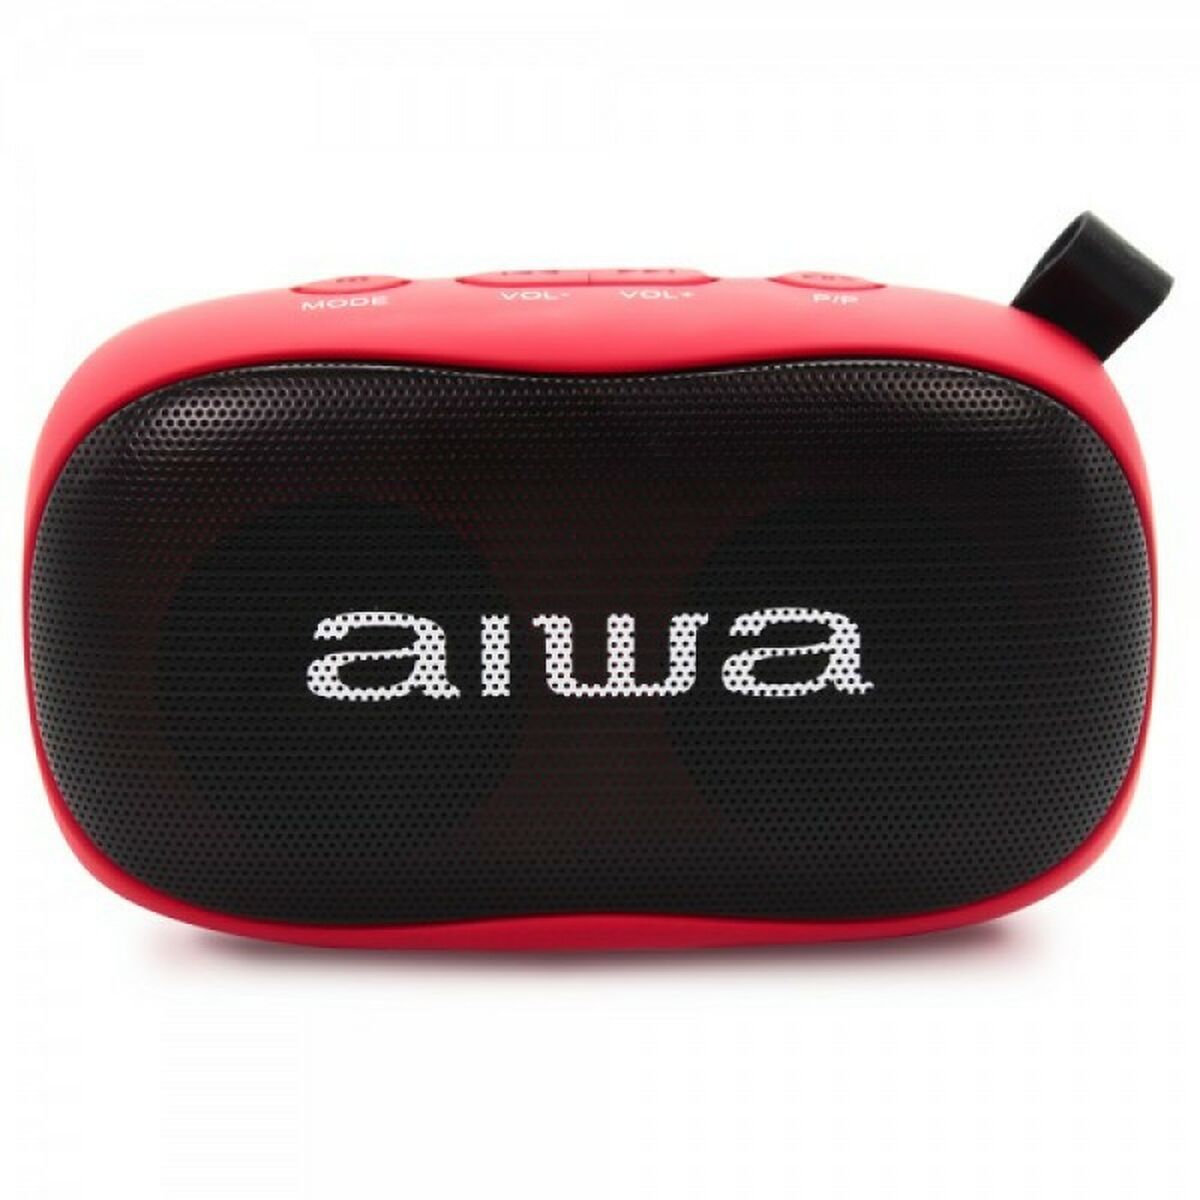 Tragbare Bluetooth-Lautsprecher Aiwa BS-110RD 10W Rot 5 W